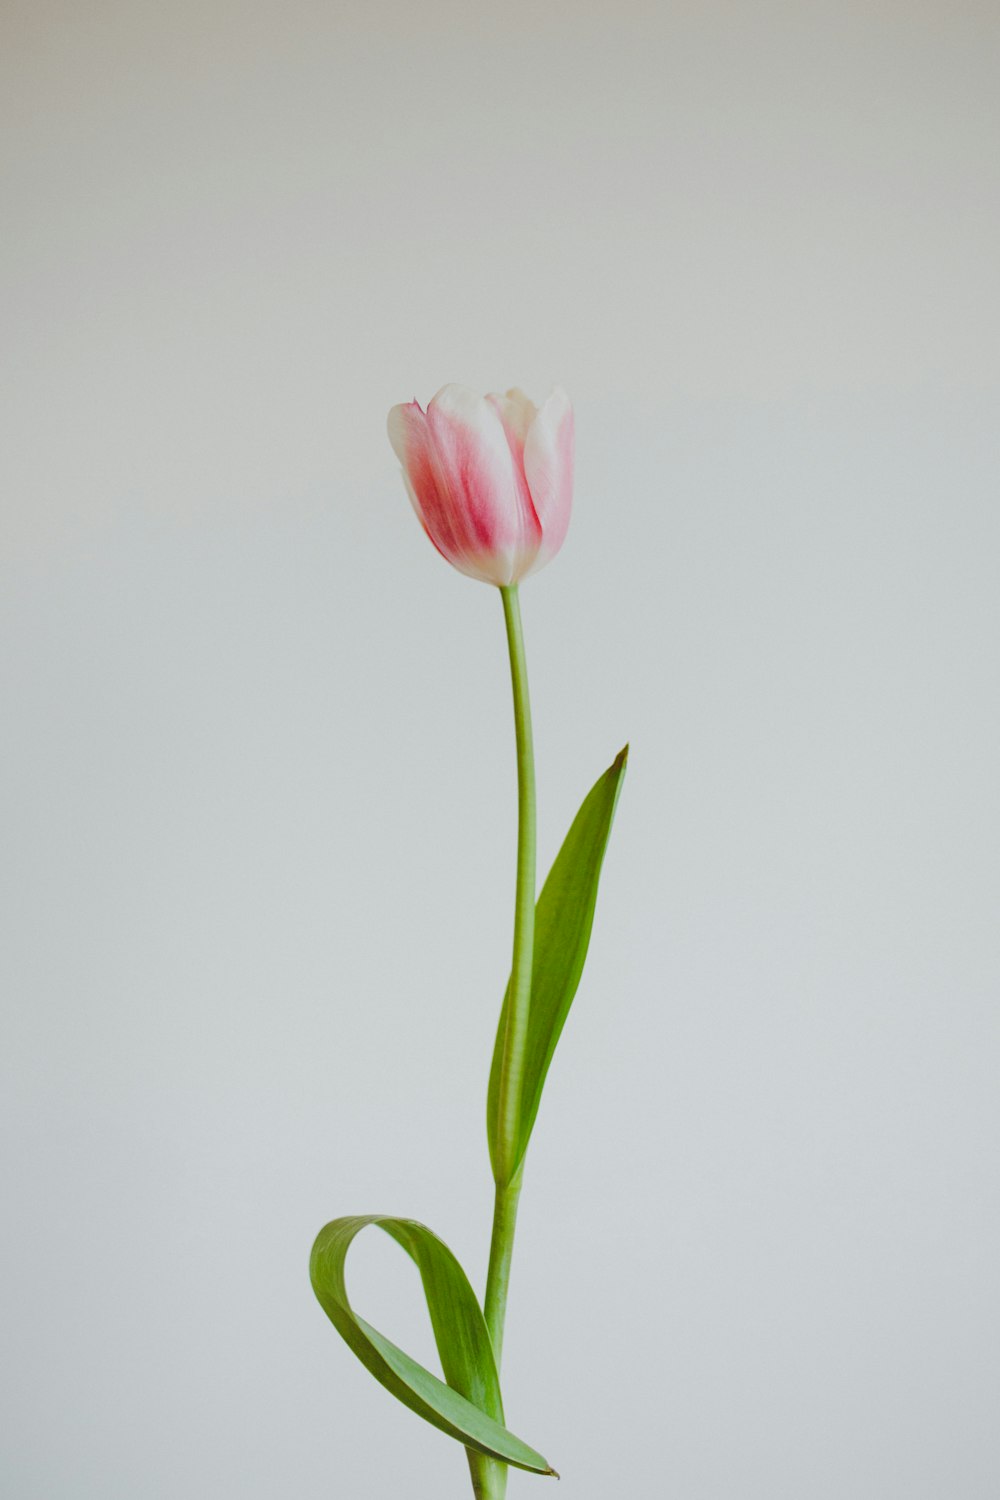 tulipano rosa in fiore foto ravvicinata